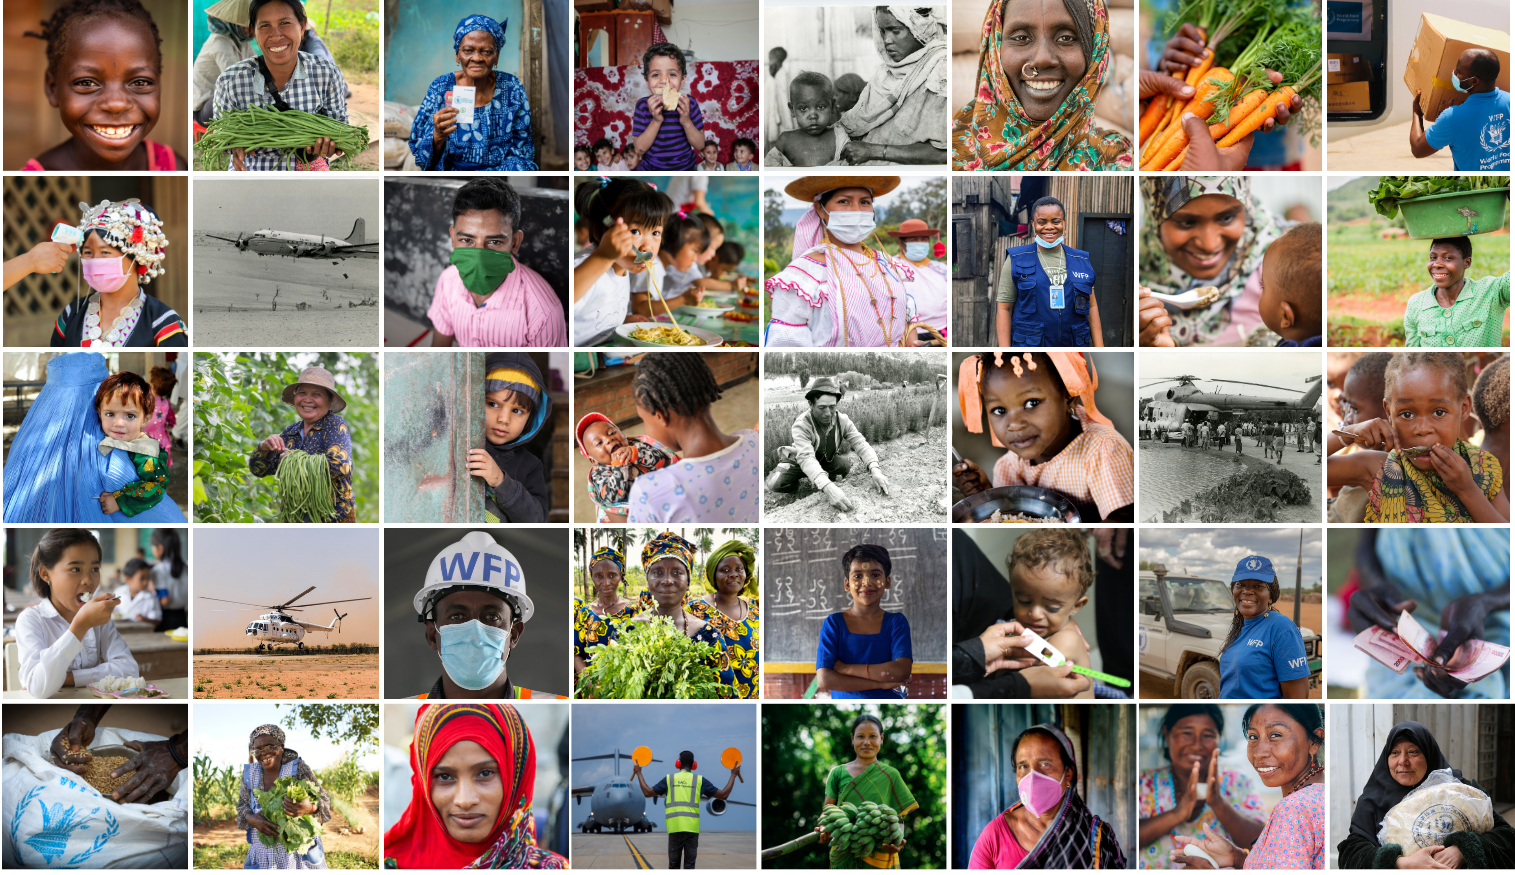 Всемирная продовольственная программа удостоена Нобелевской премии мира 